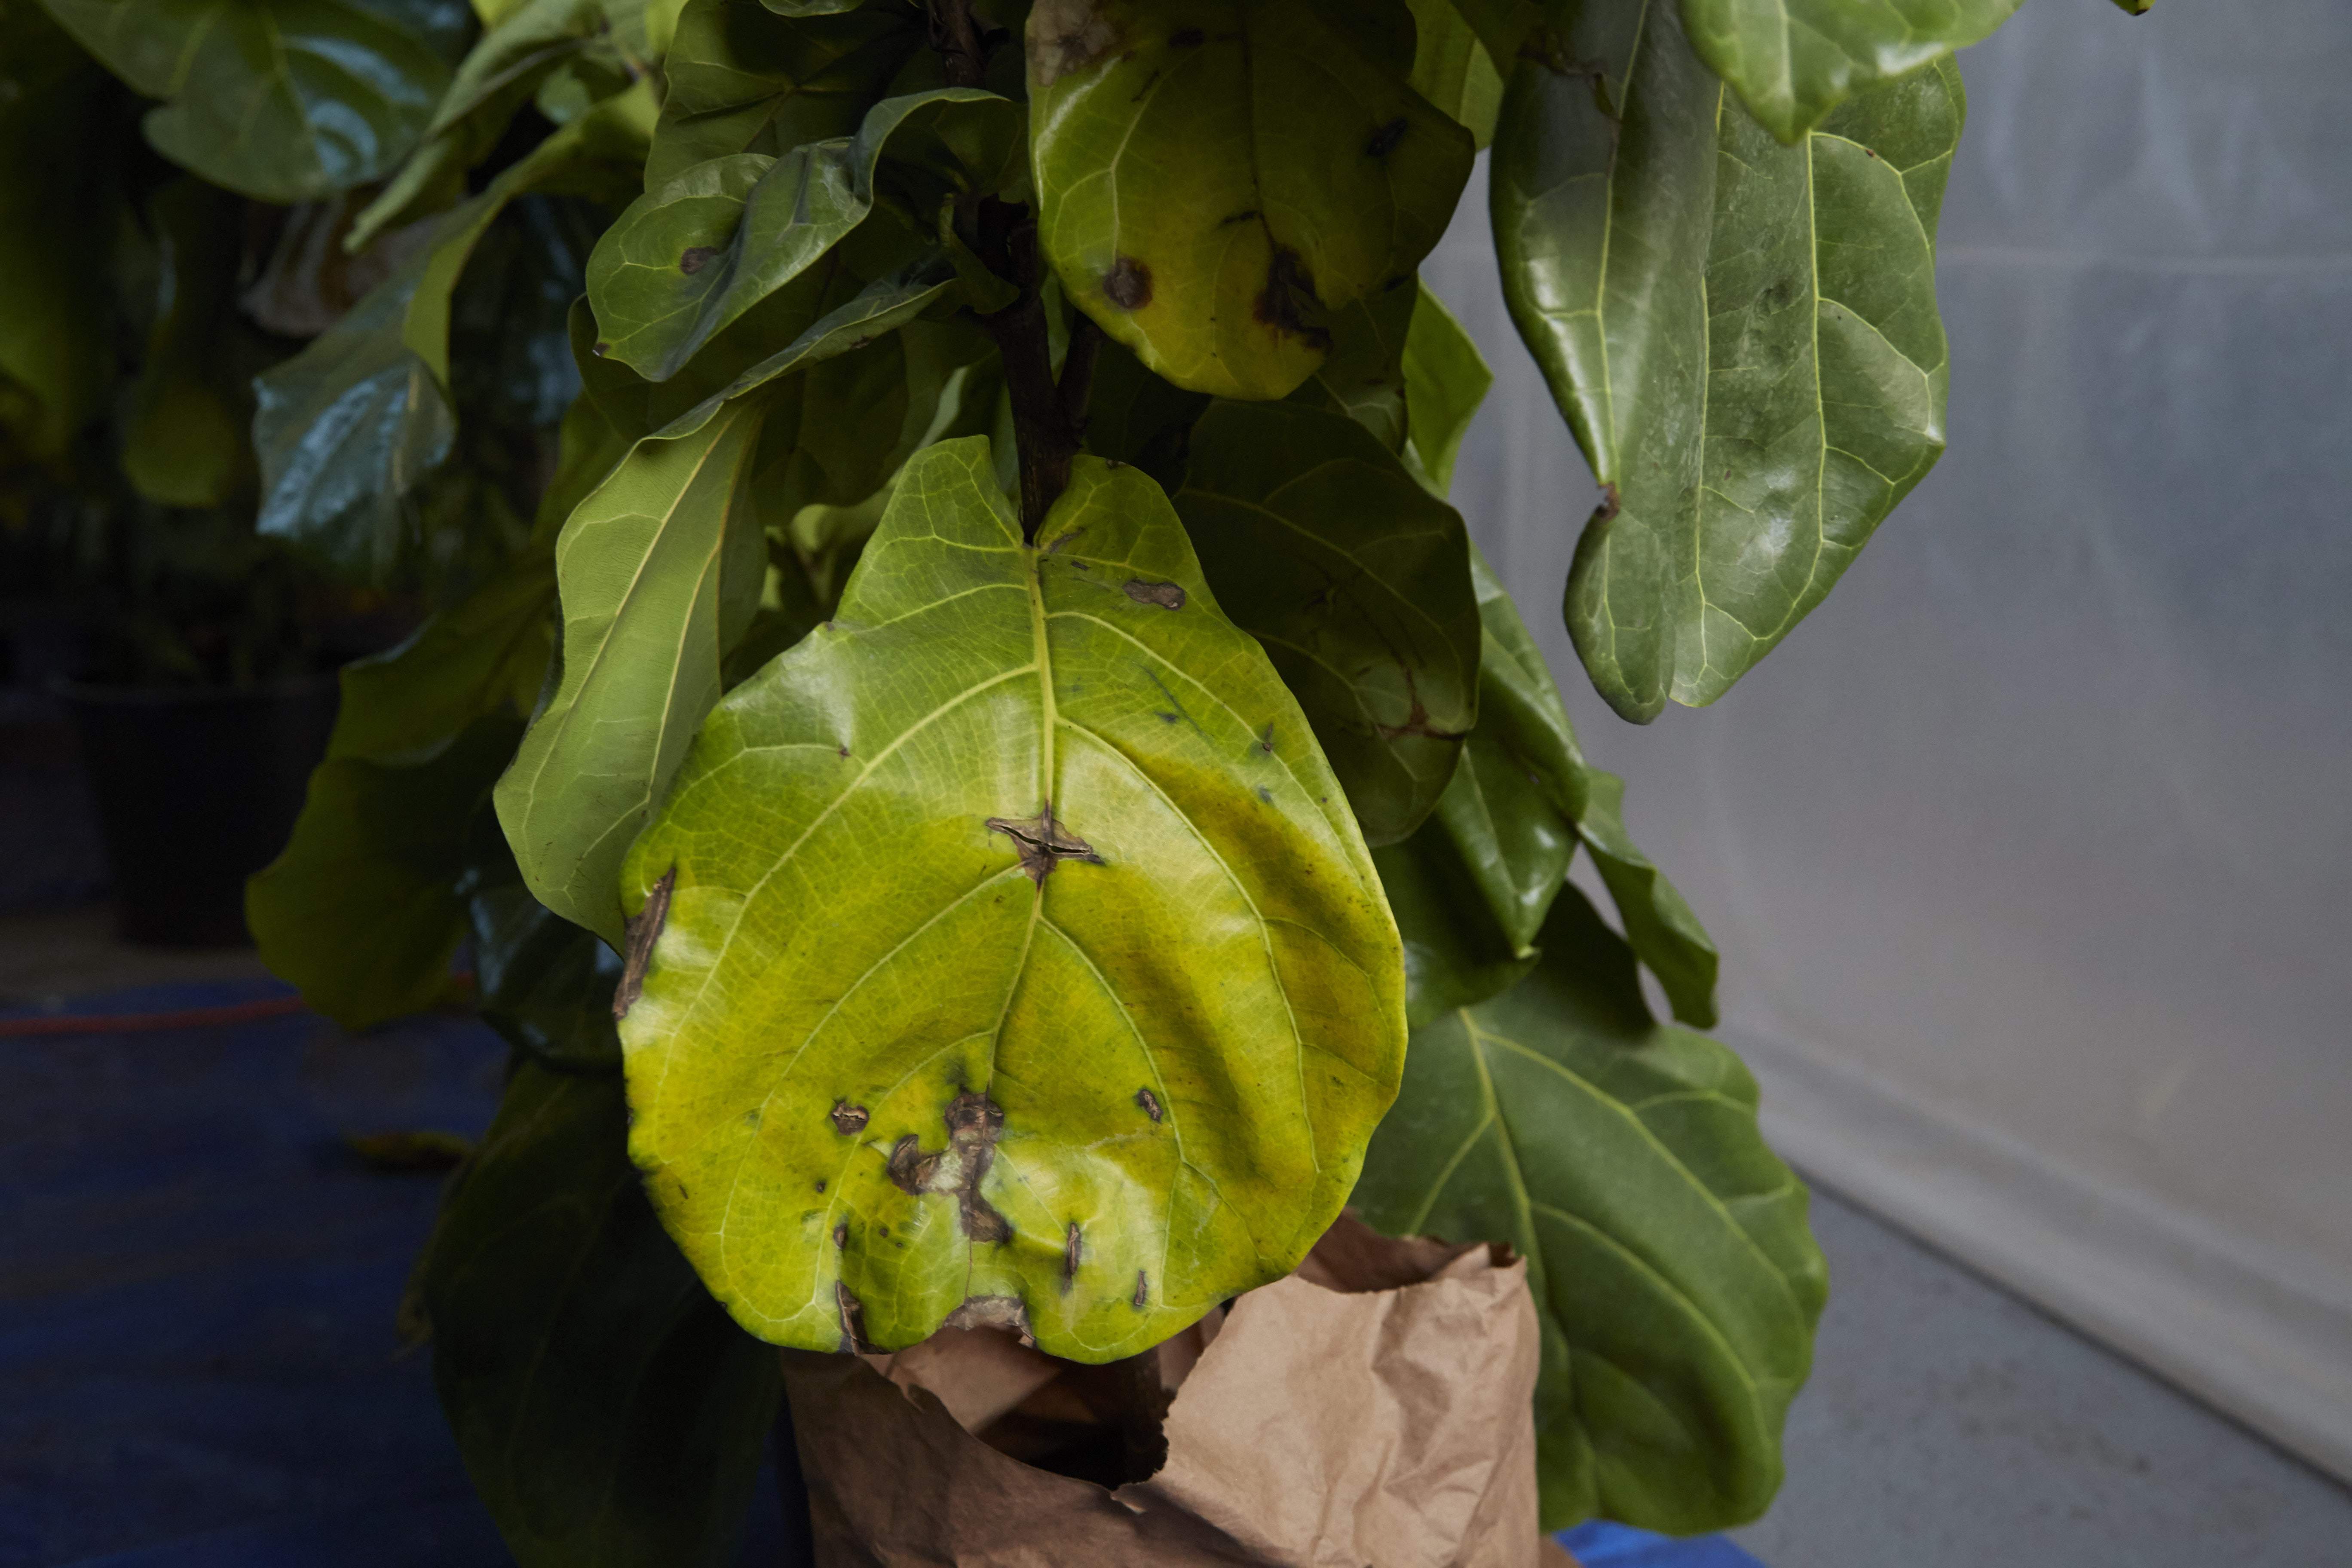 Почему у комнатных растений желтеют листья — причины и лечение